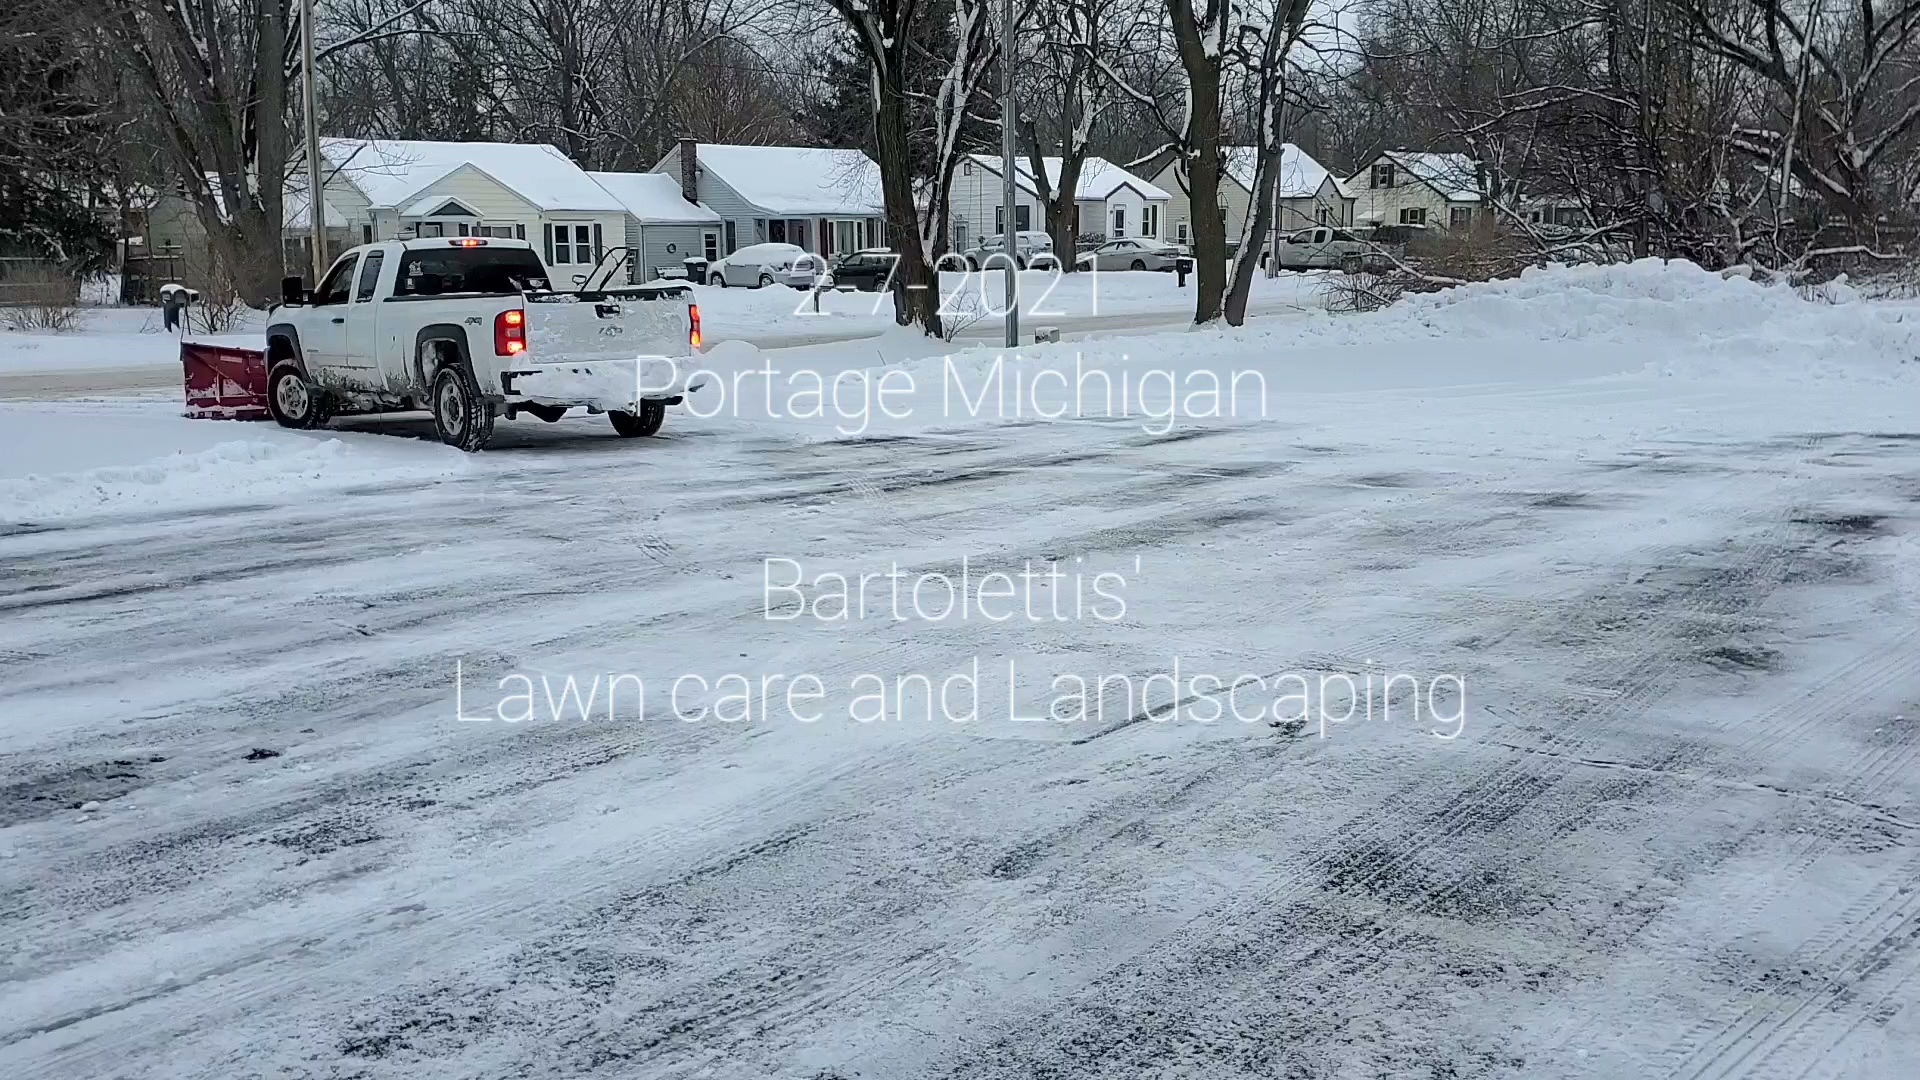 Bartolettis' Lawn care and Landscaping 53548 Patton Ct, Mattawan Michigan 49071